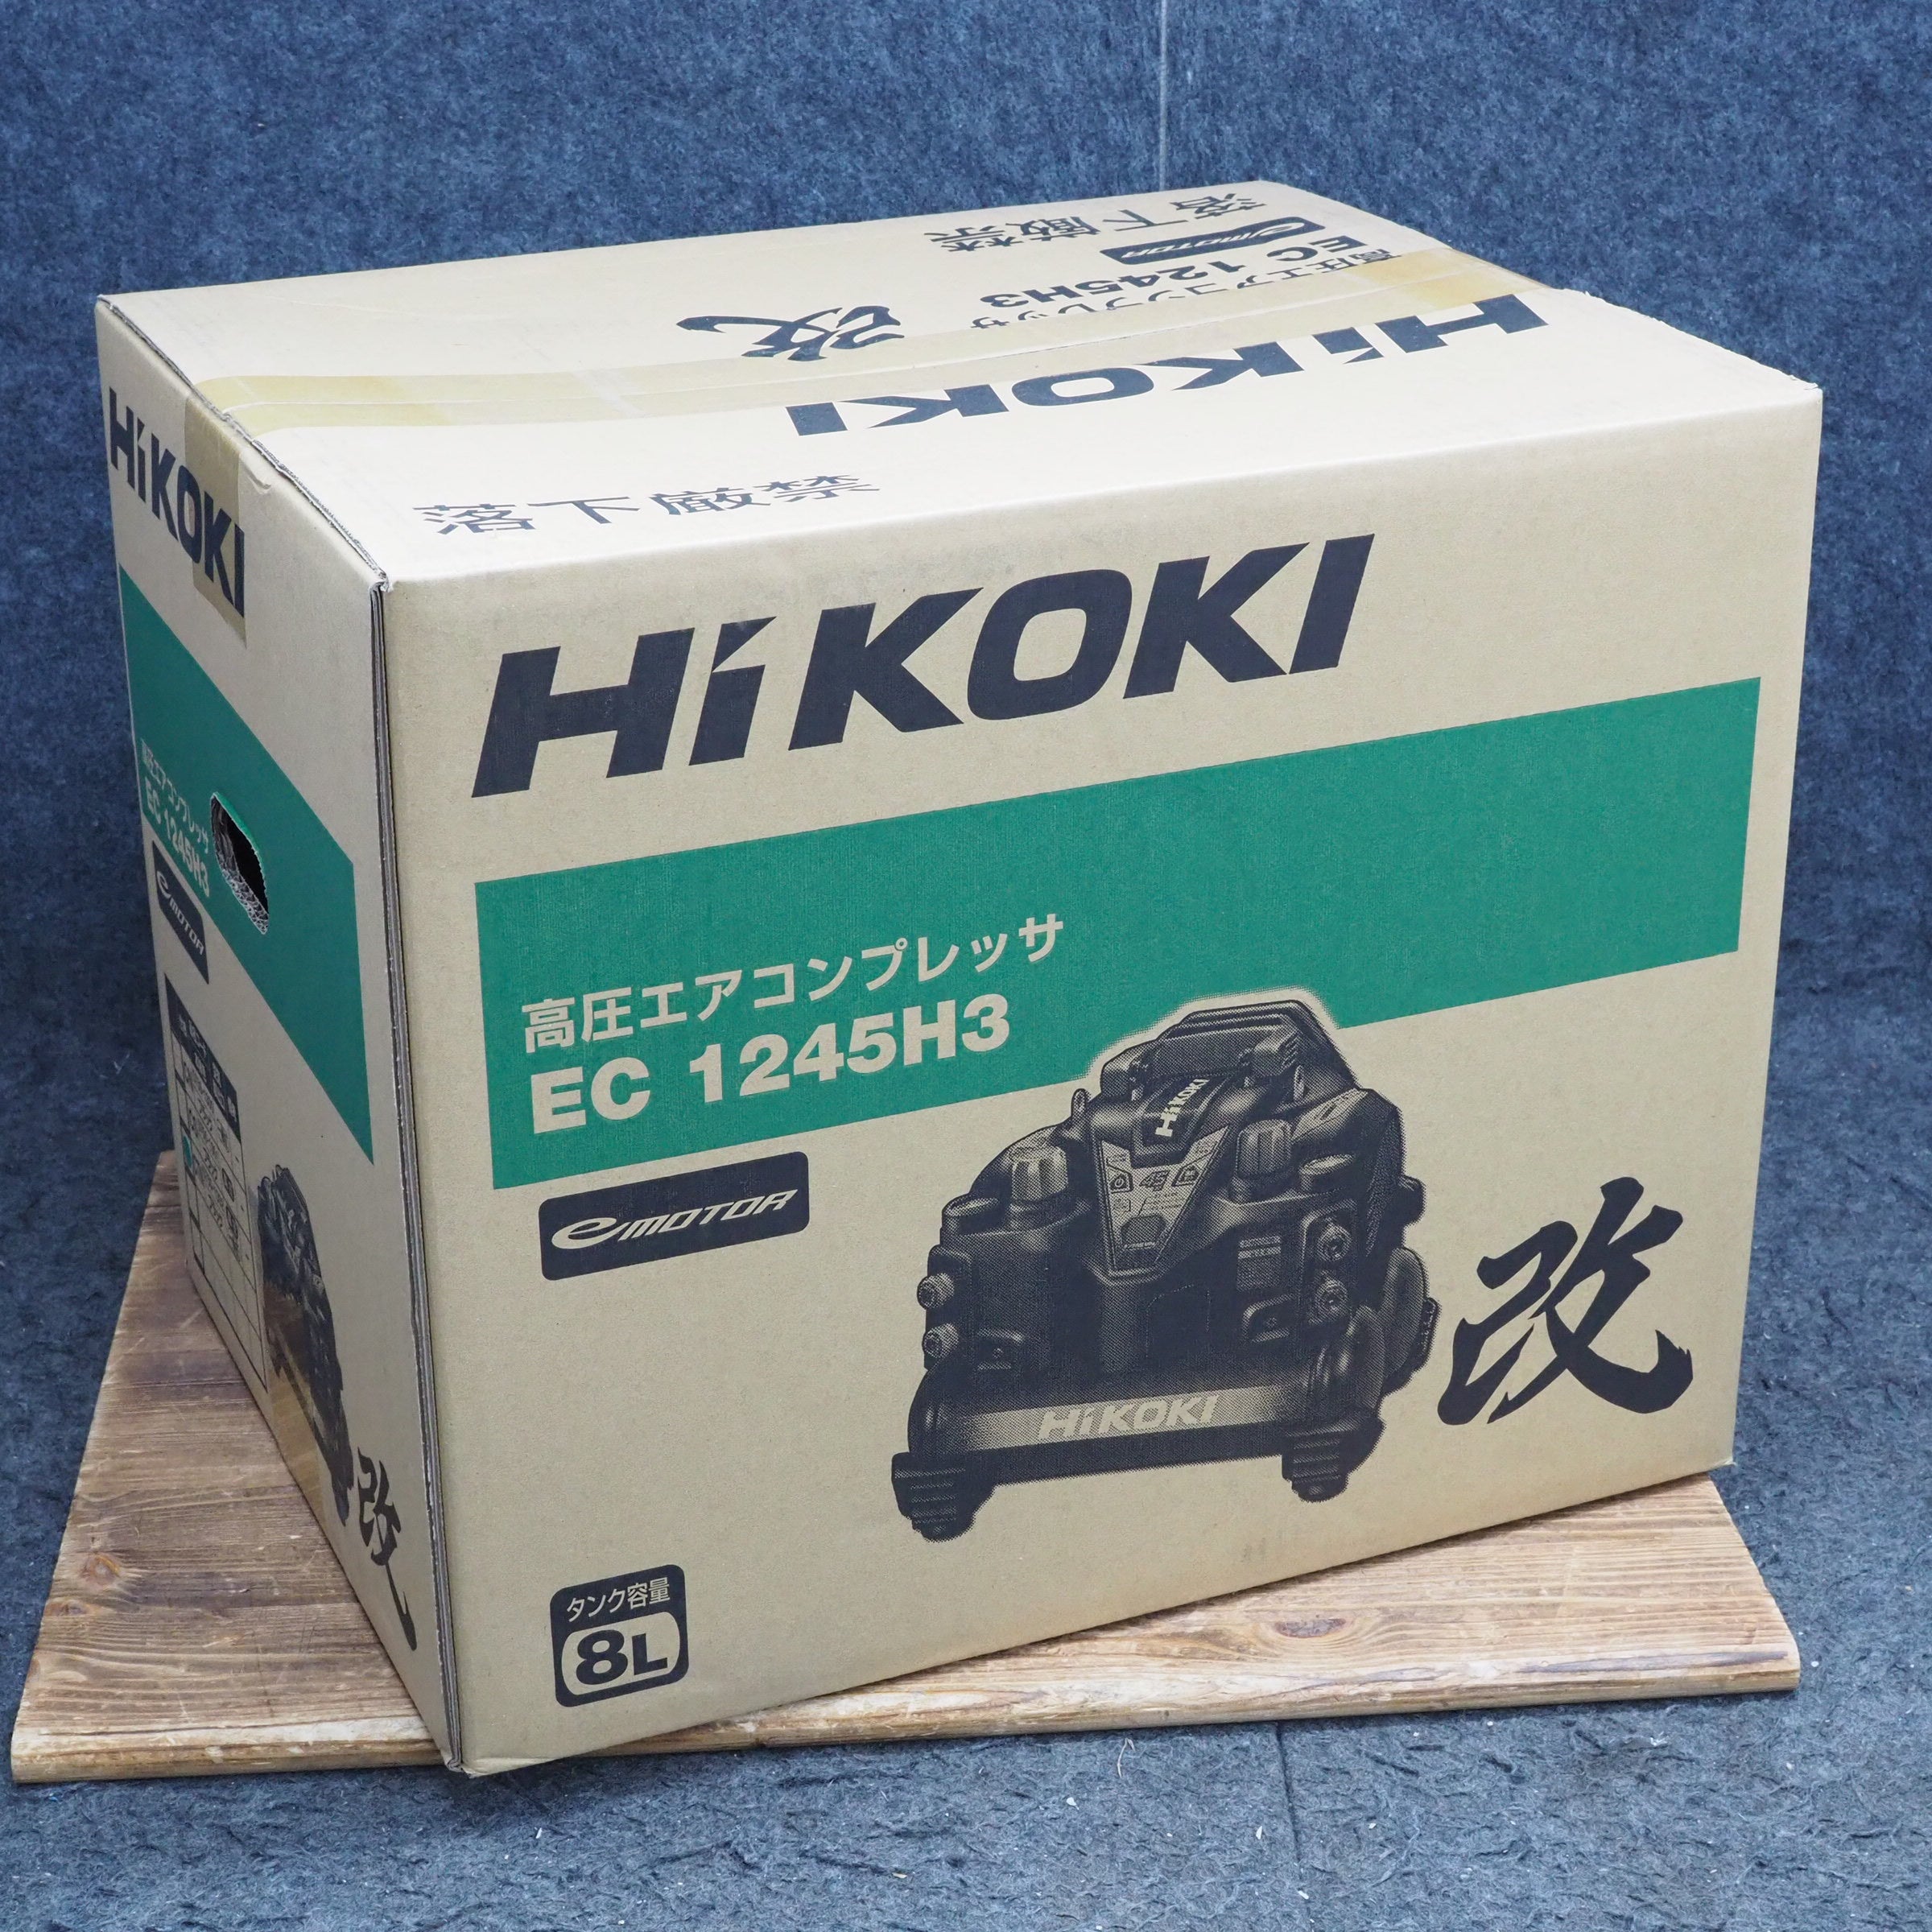 ☆ハイコーキ(HIKOKI ※旧:日立工機) 高圧エアコンプレッサ EC1245H3